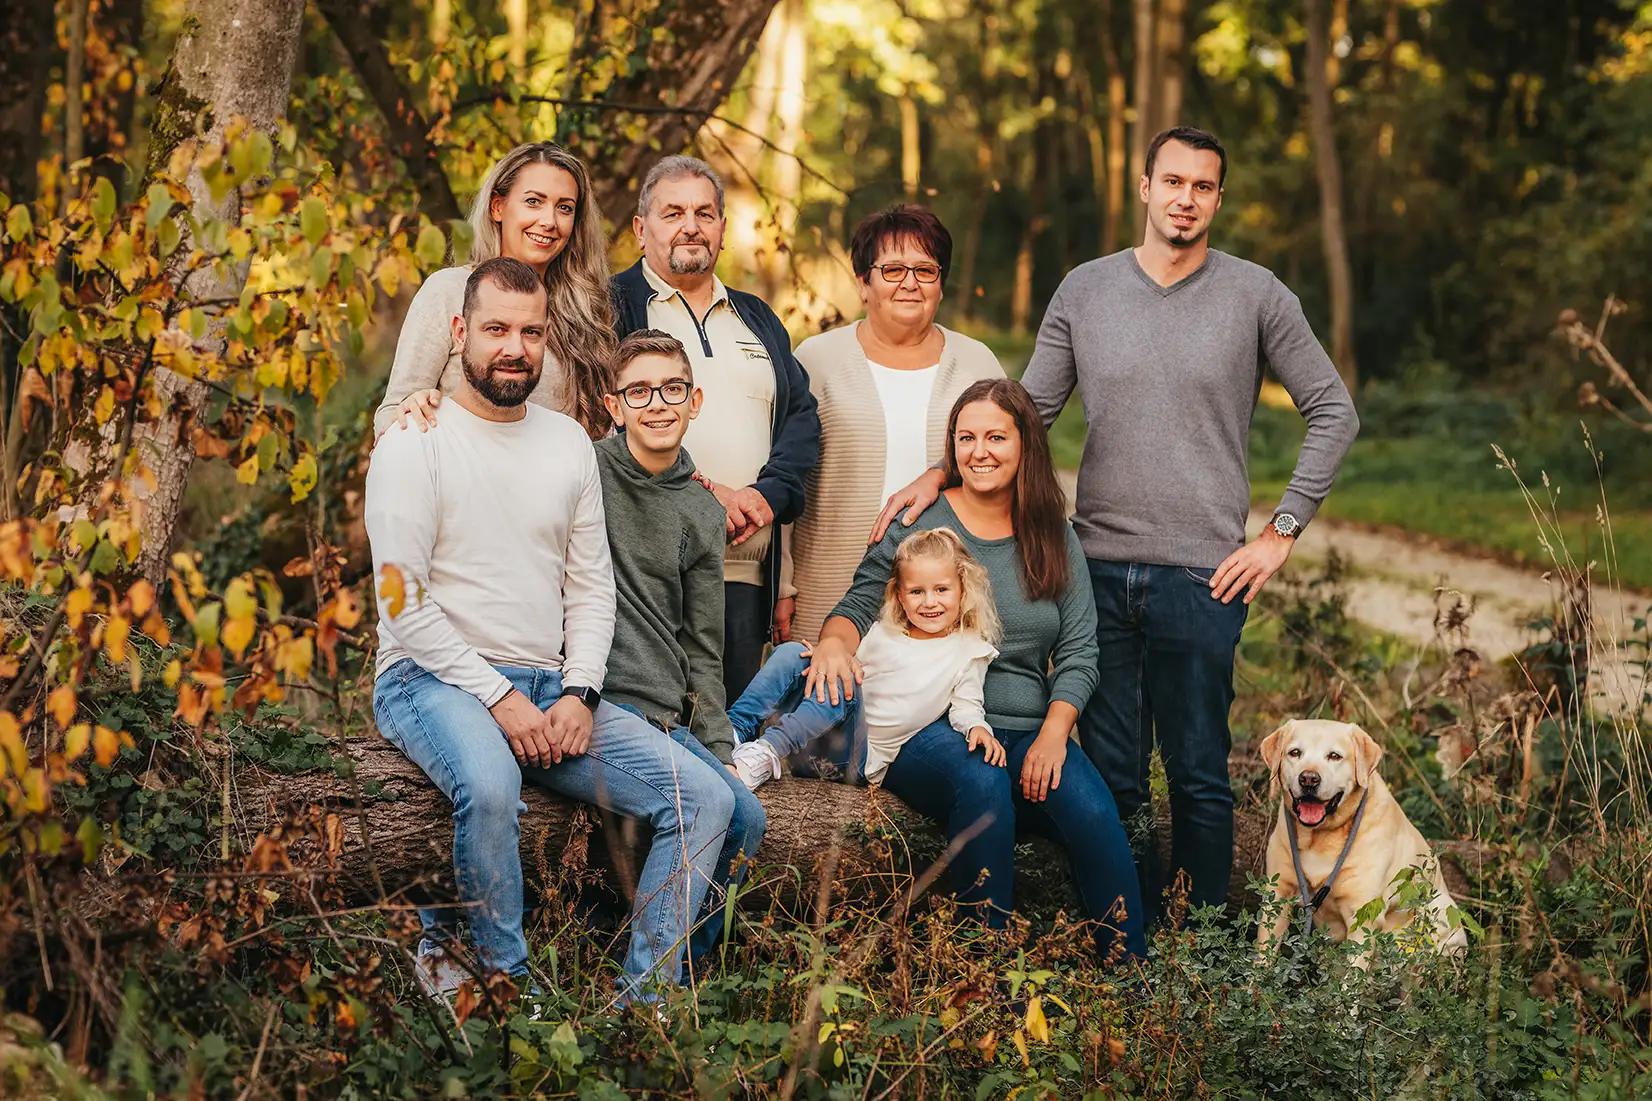 Familienfoto-Familie-Fotoshooting-Amstetten-Niederösterreich-Fotografin-Homestory-draussen-outdoor-Fotos (56)